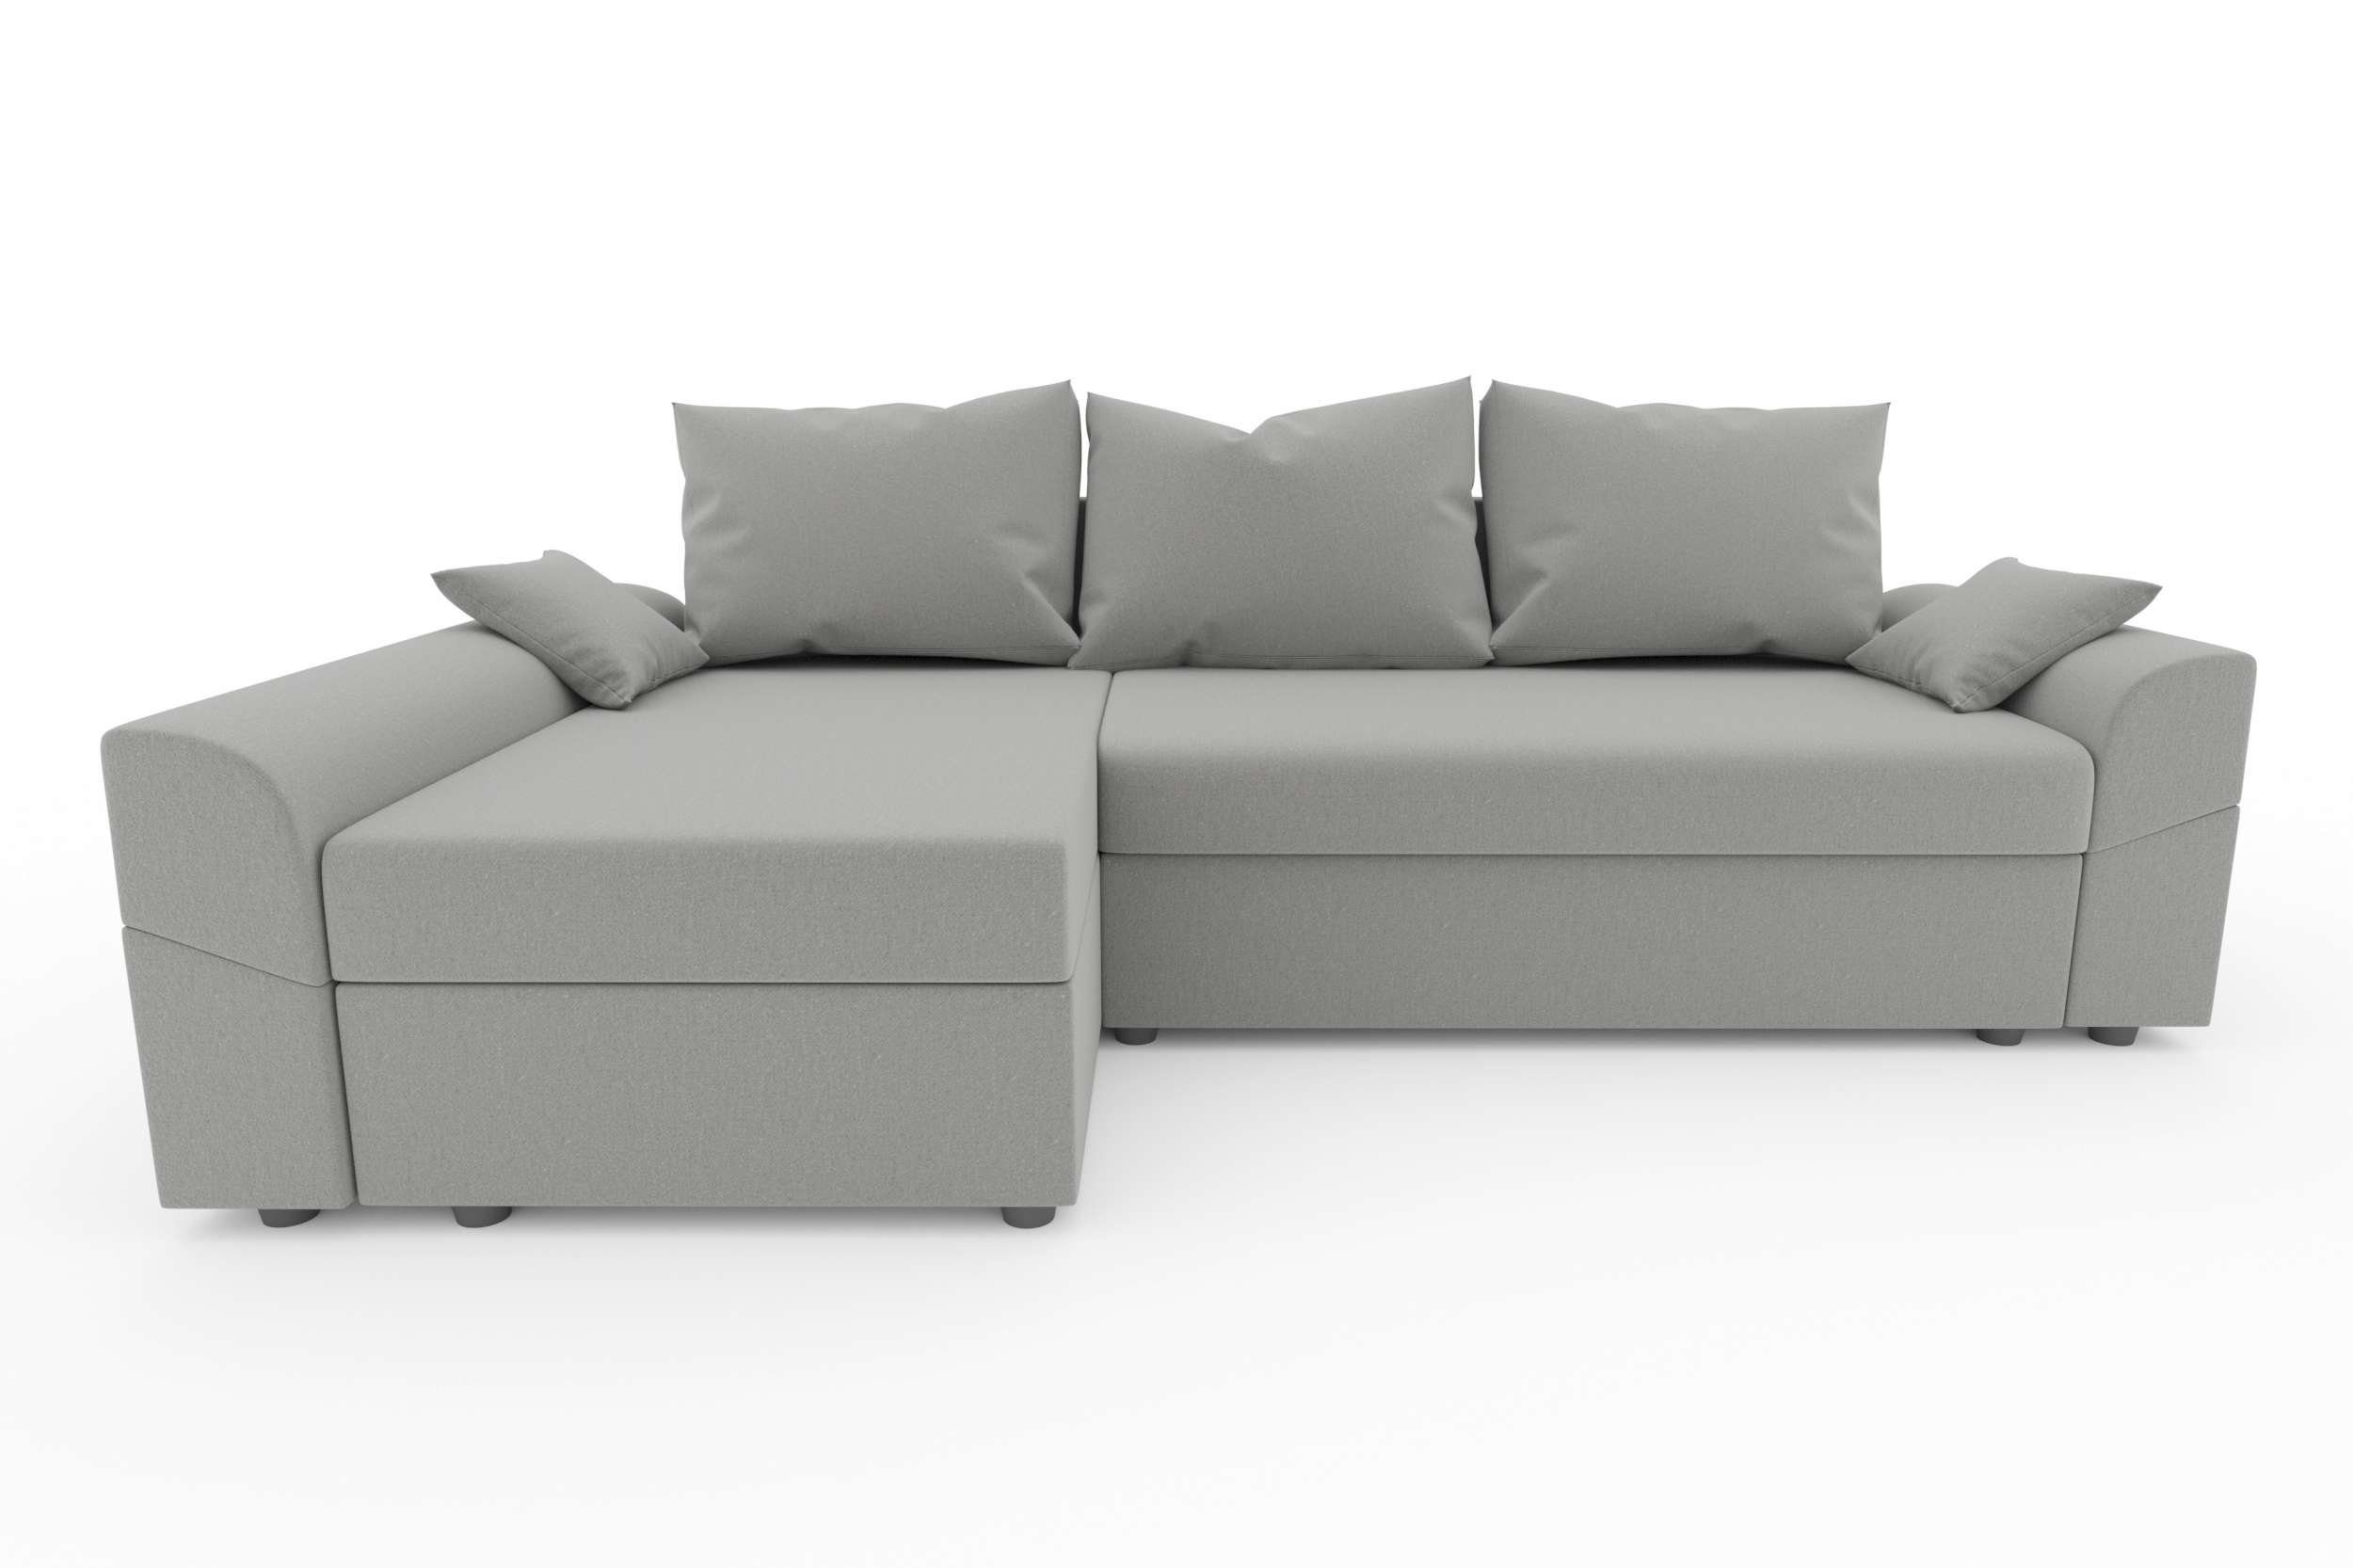 Bettfunktion, mit Eckcouch, Bettkasten, Ecksofa Sitzkomfort, Modern mit L-Form, Sofa, Design Aurora, Stylefy